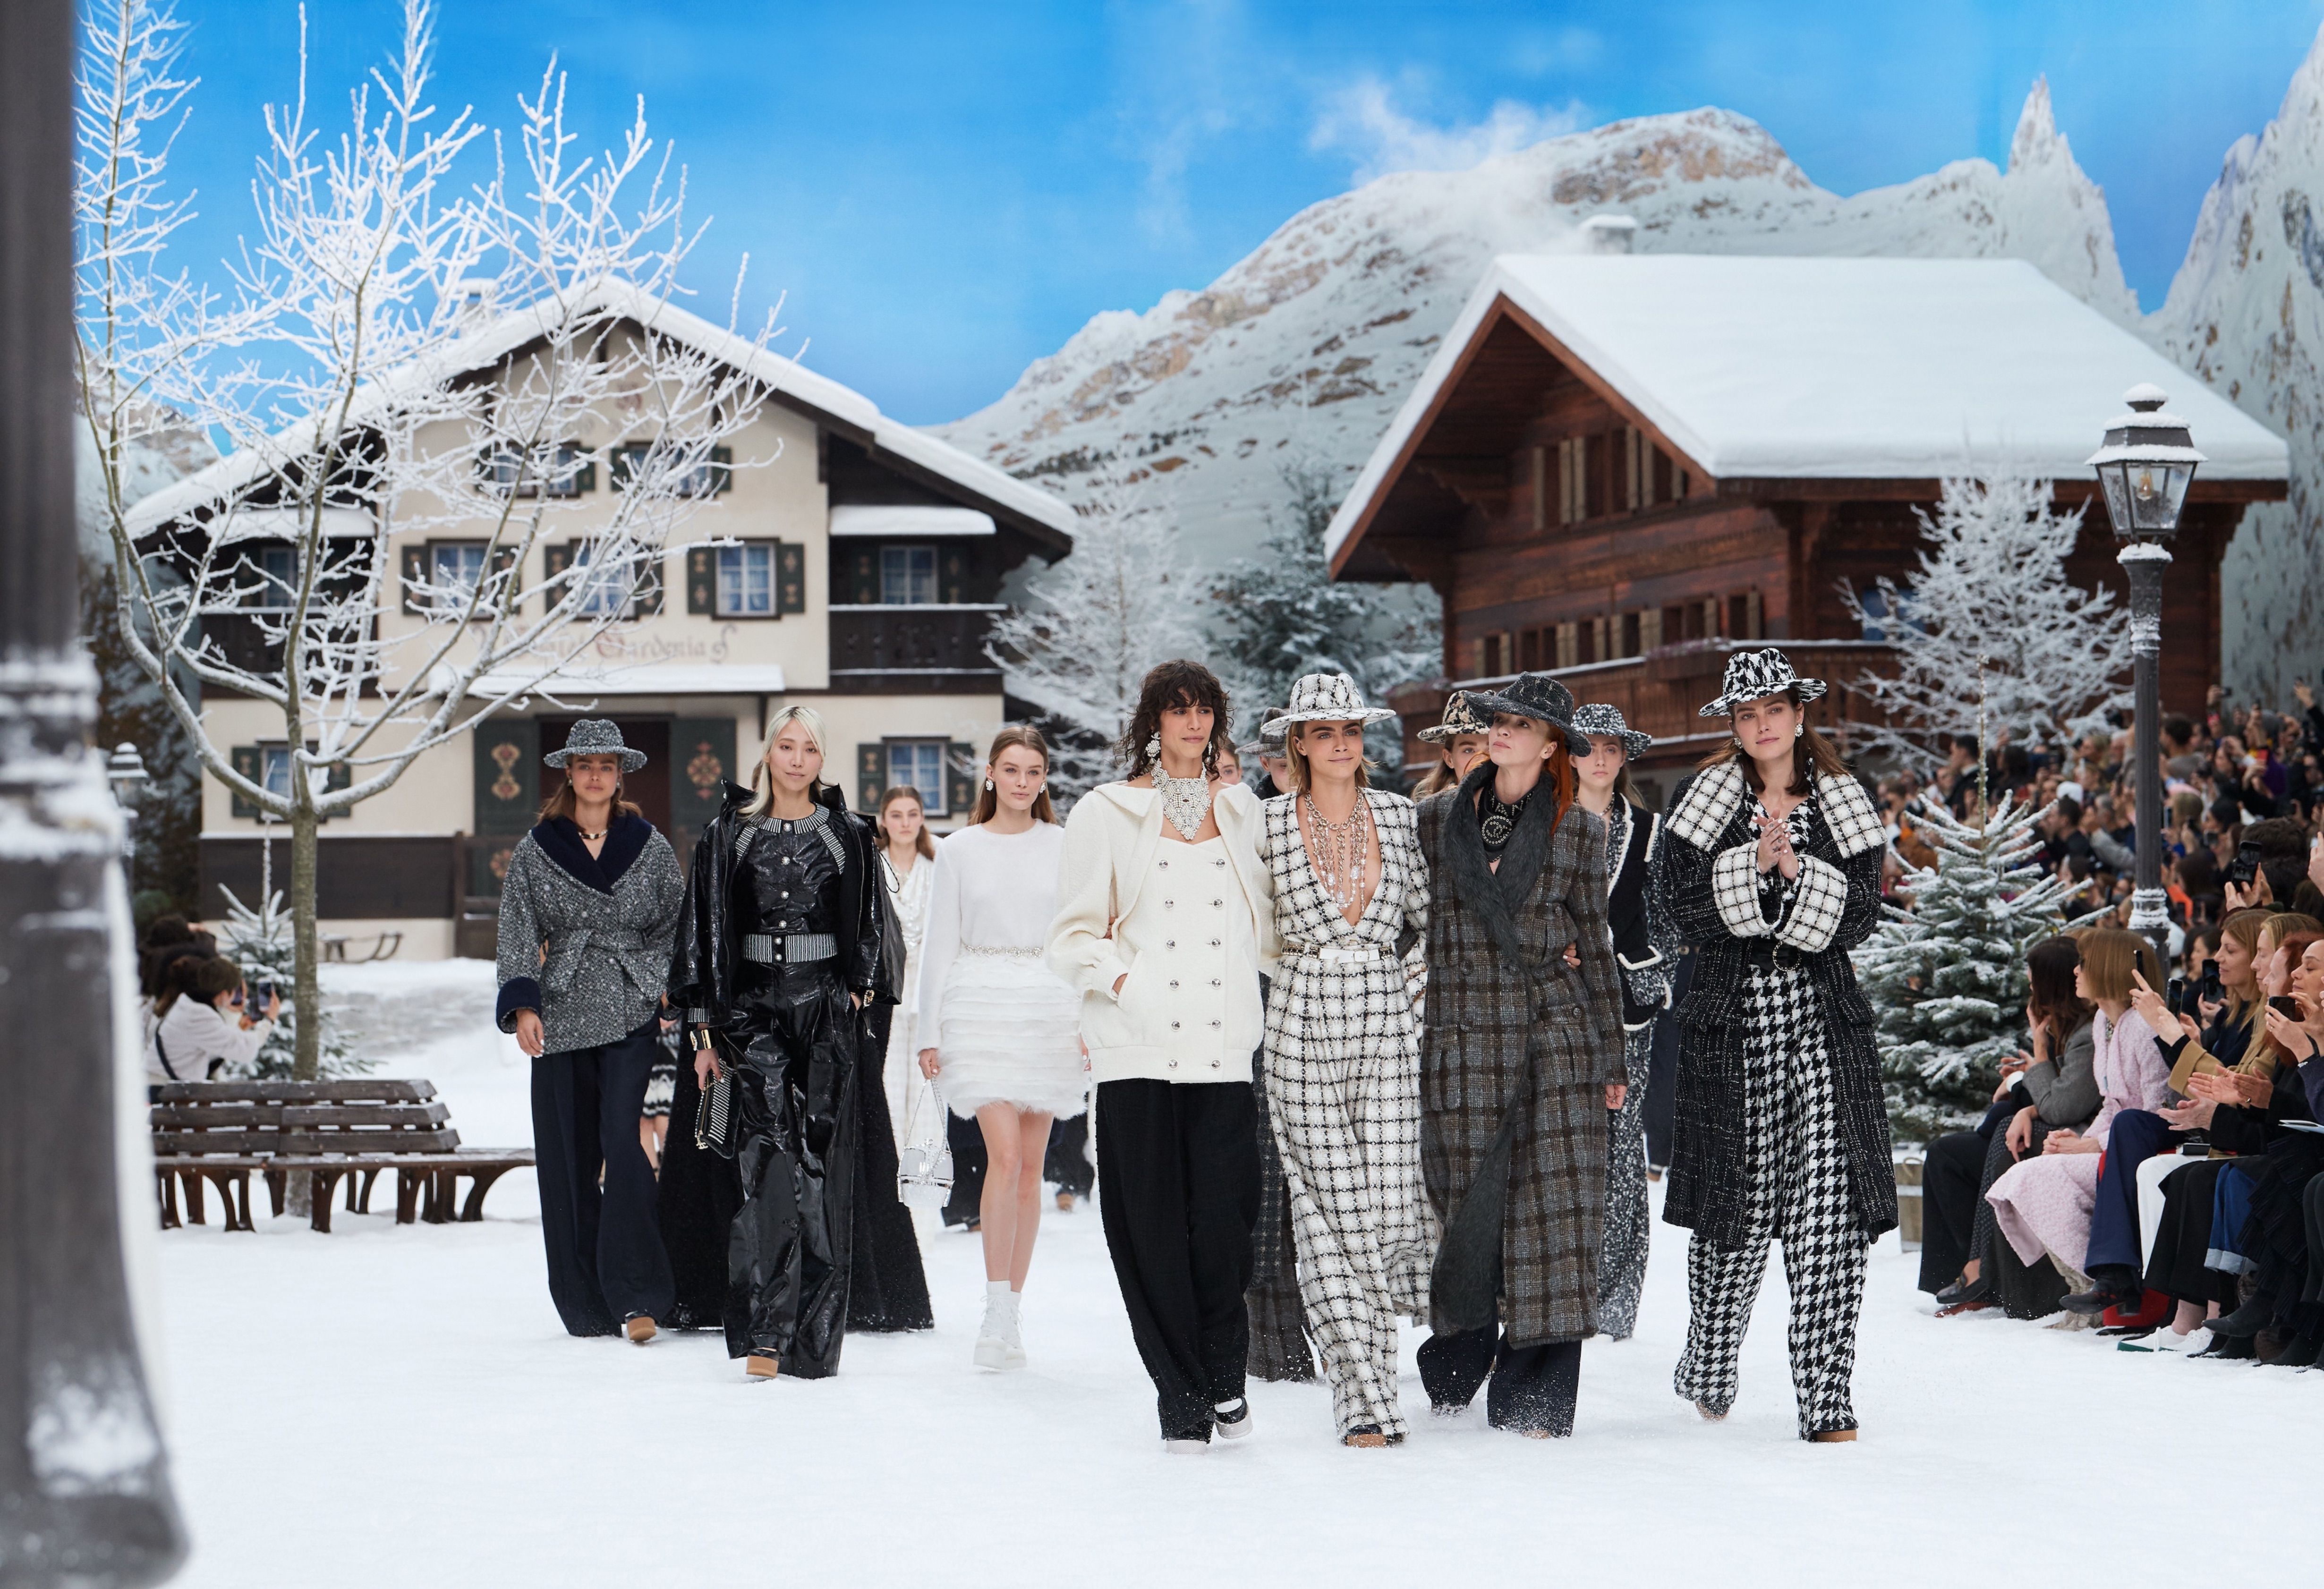 Luxury has to be luxury” — Karl Lagerfeld's lasting legacy